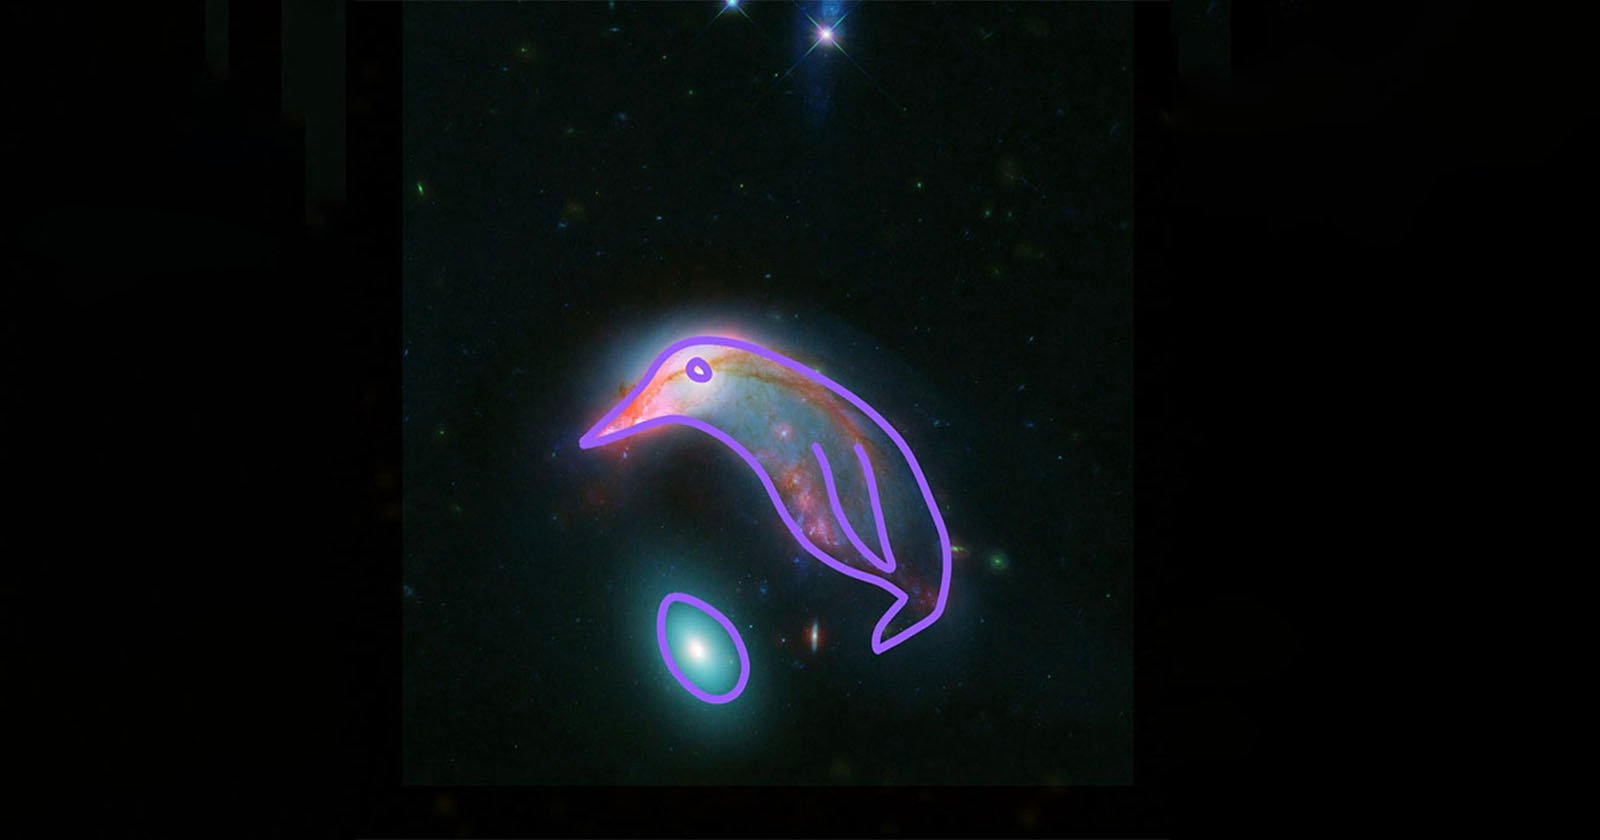 NASA Shares Image of Penguin and Egg Shaped Galaxy